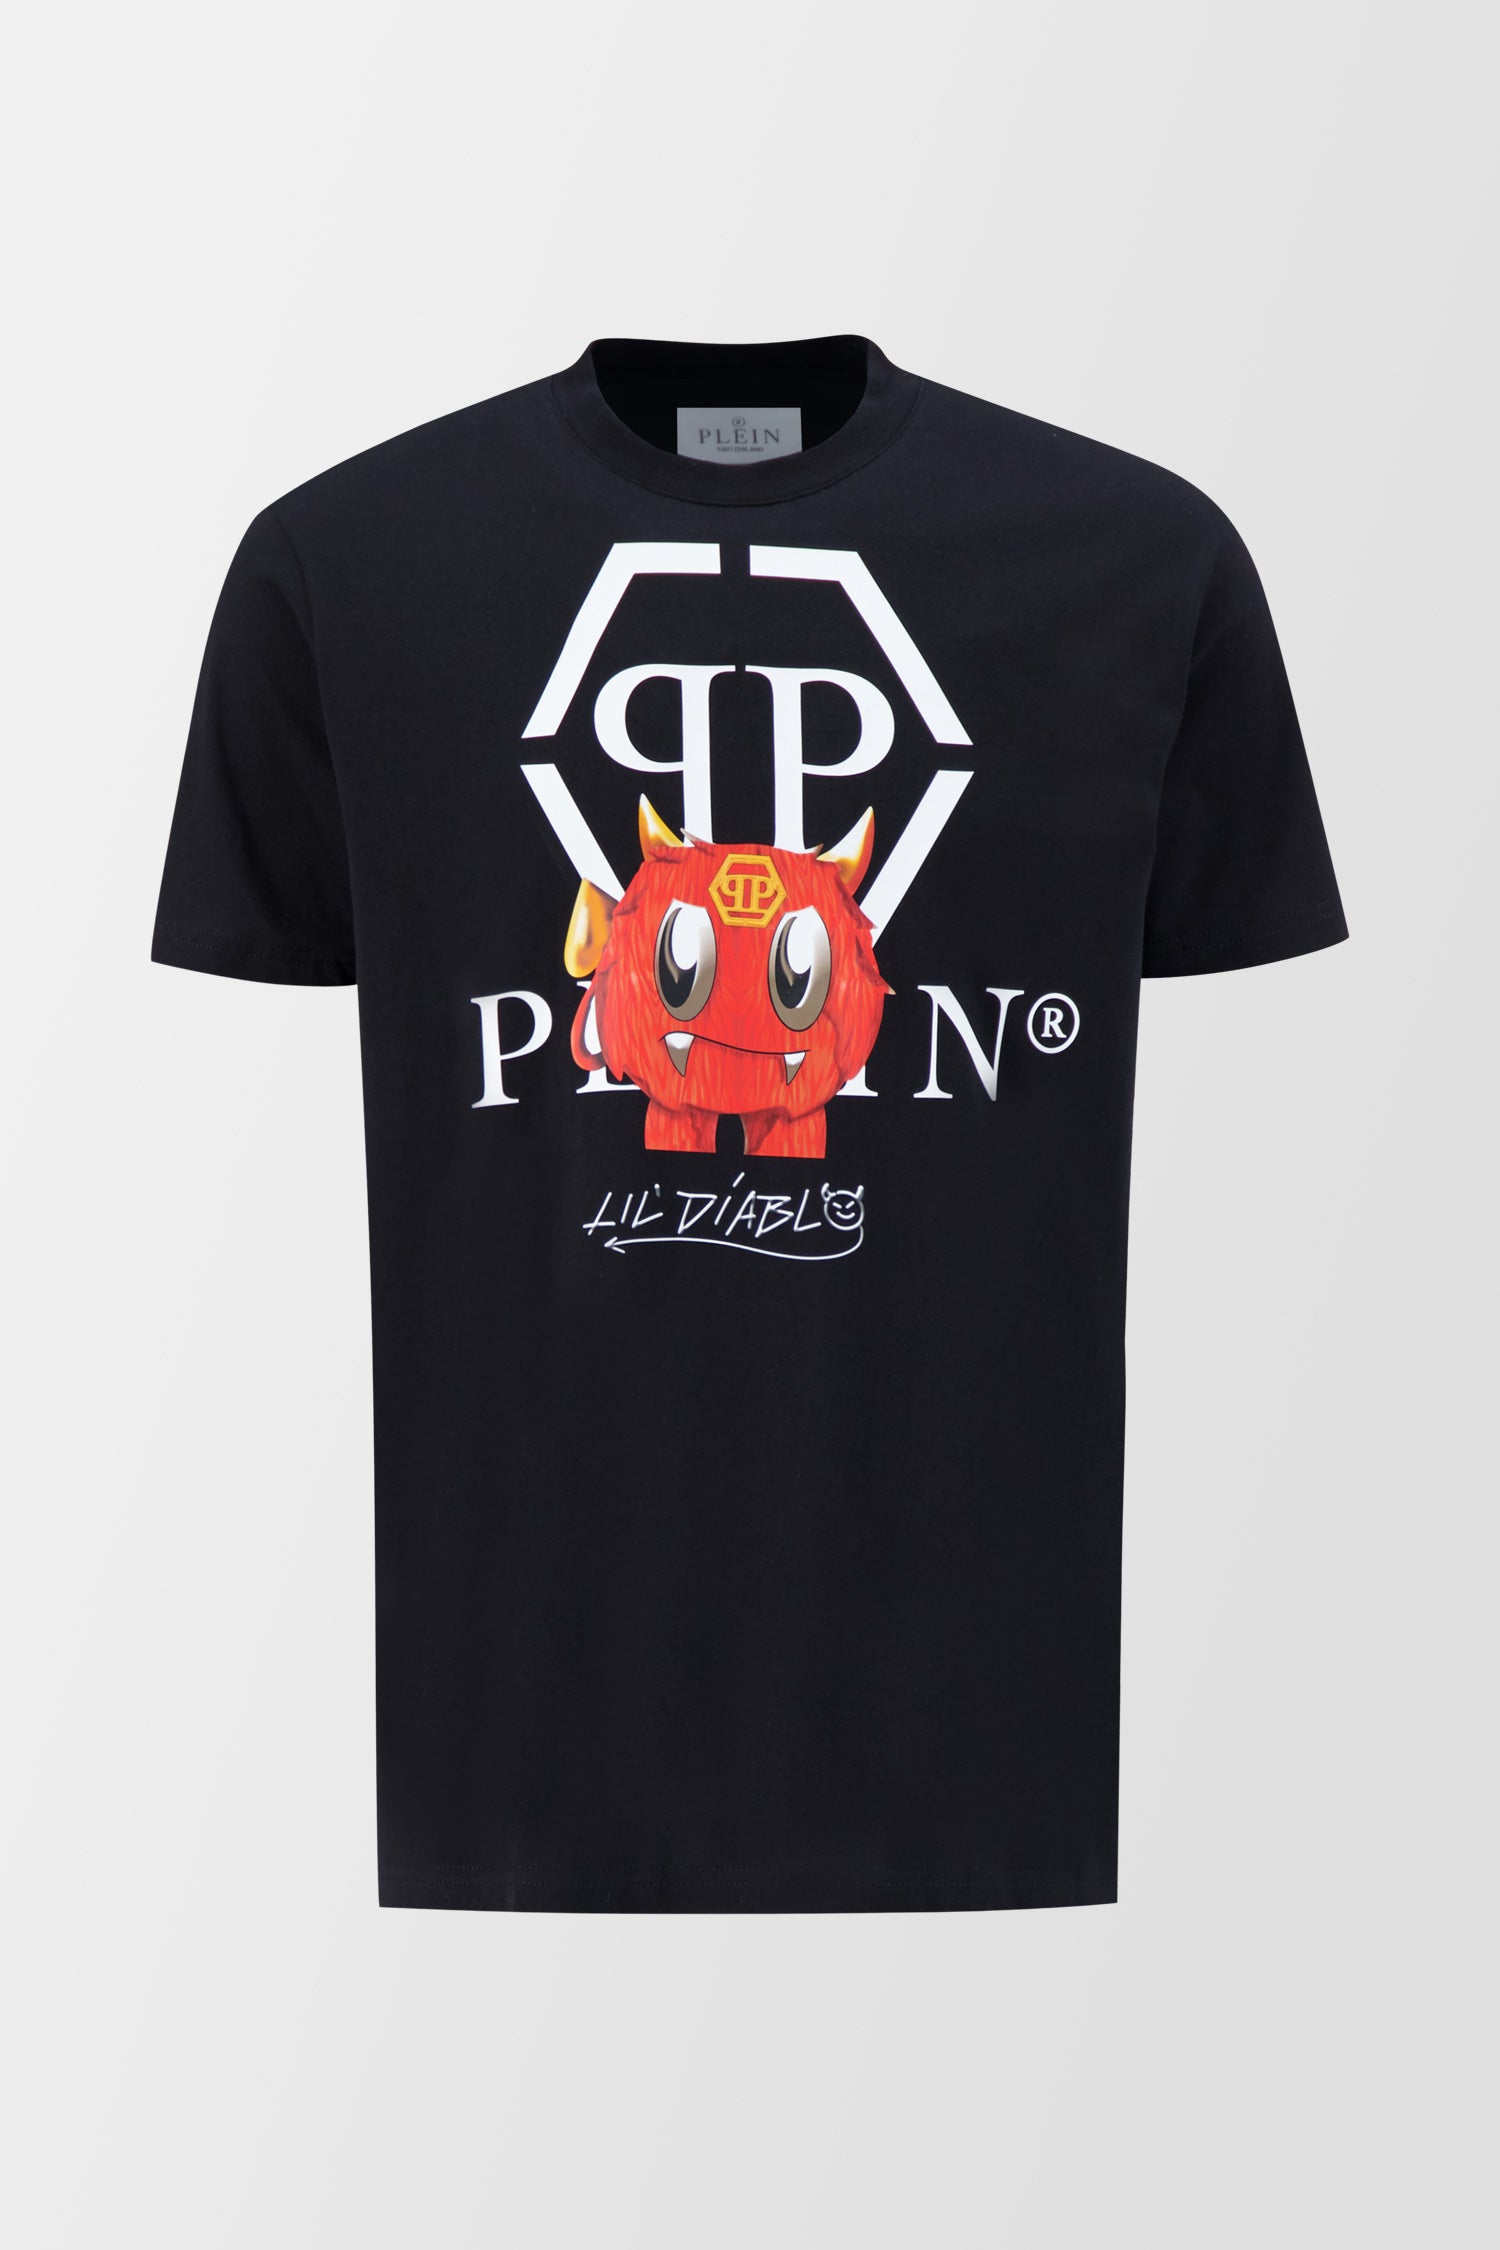 Philipp Plein Black Round Neck SS Monster T-Shirt